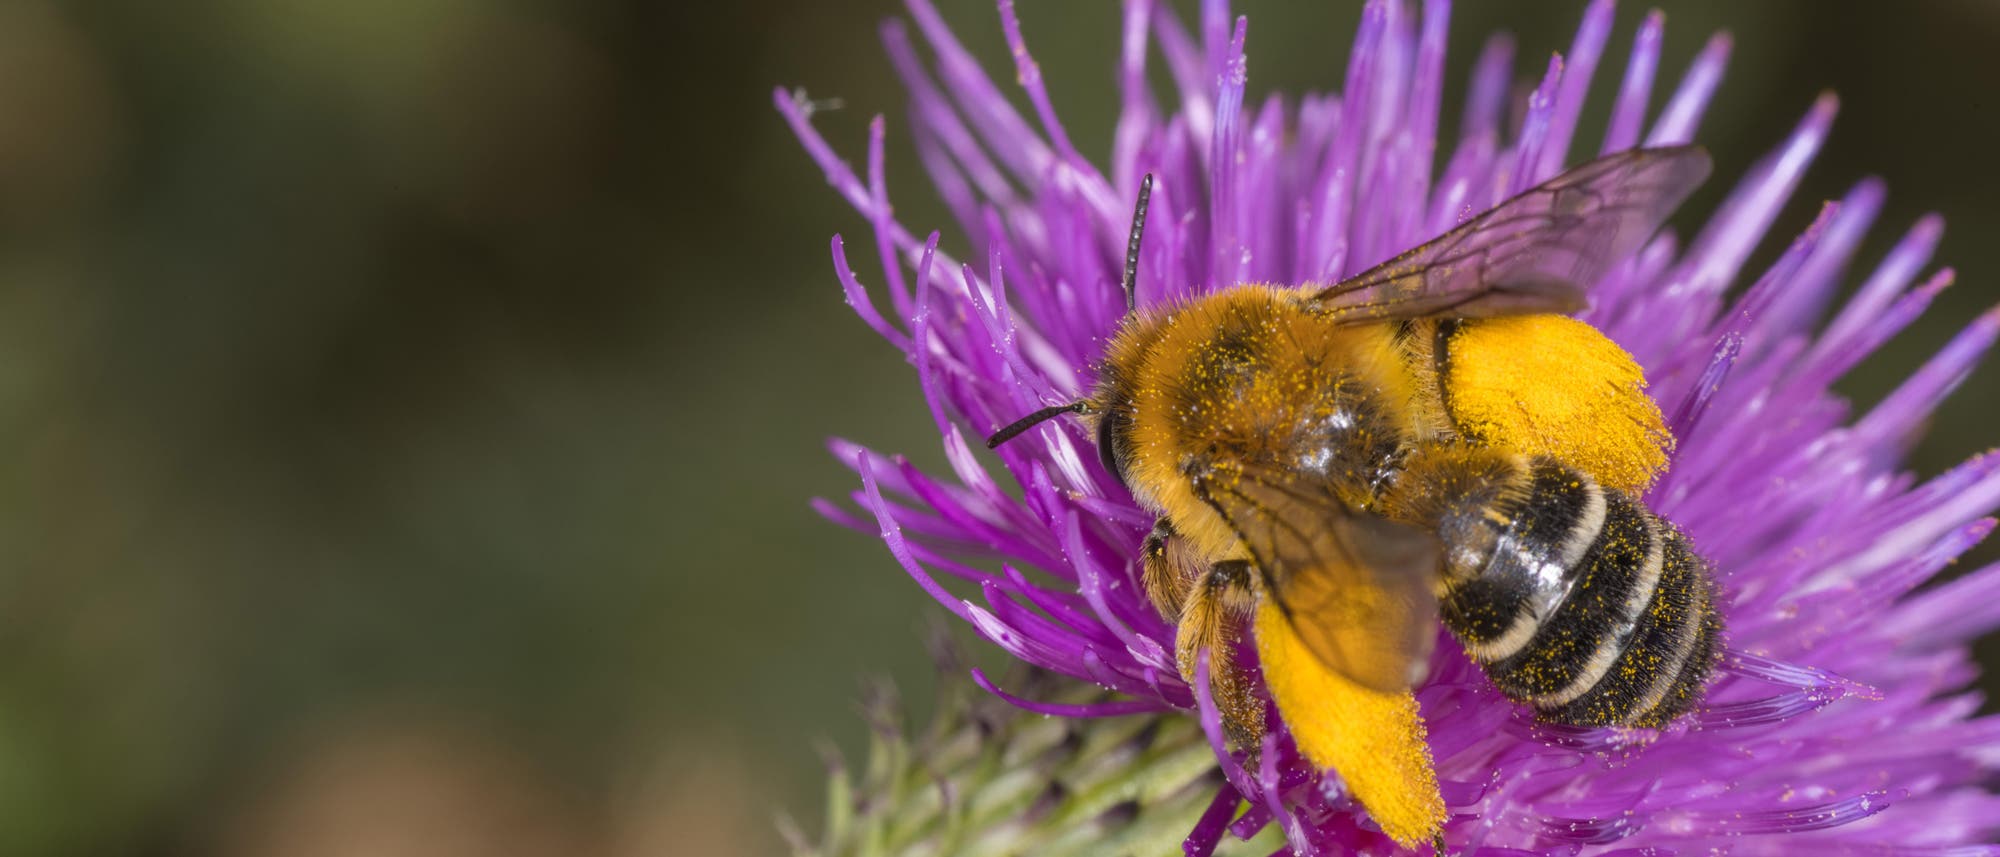 Eine Dunkelfransige Hosenbiene sitzt auf der Blüte einer violetten Distel. An den Hinterbeinen der Biene hat sich dick gelber Pollen angesammelt. Die Biene besitzt einen braunen Vorder- und einen dunkelbraun-weiß gestreiften Hinterkörper. Der Hintergrund des Bildes ist verschwommen